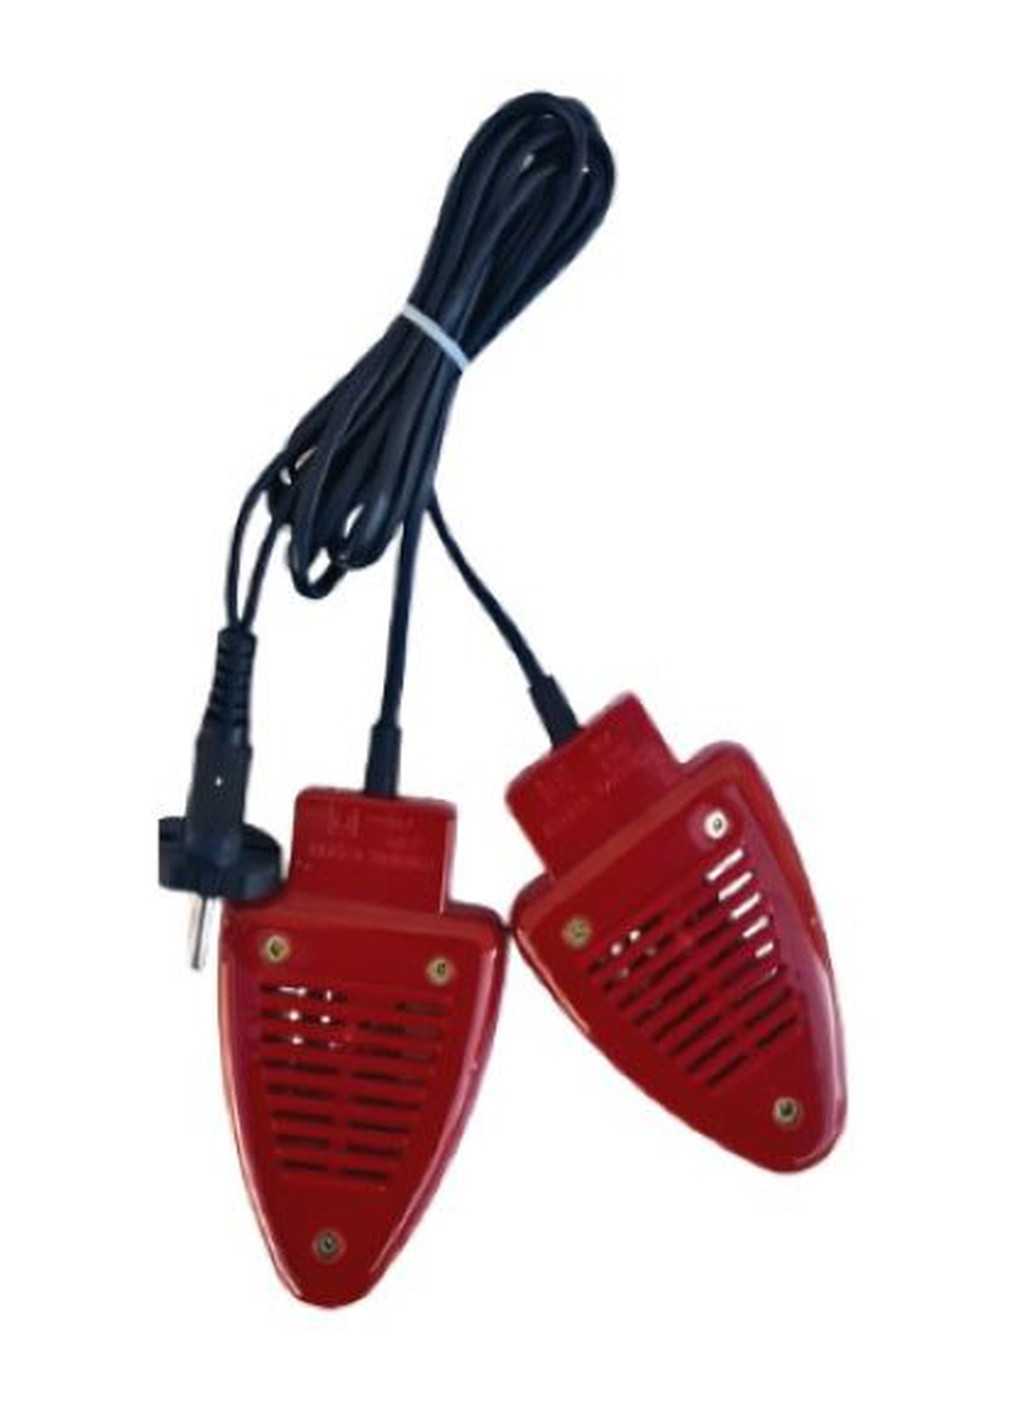 Электросушилка для обуви Универсальная красная КN-2034 Monocrystal (255340152)